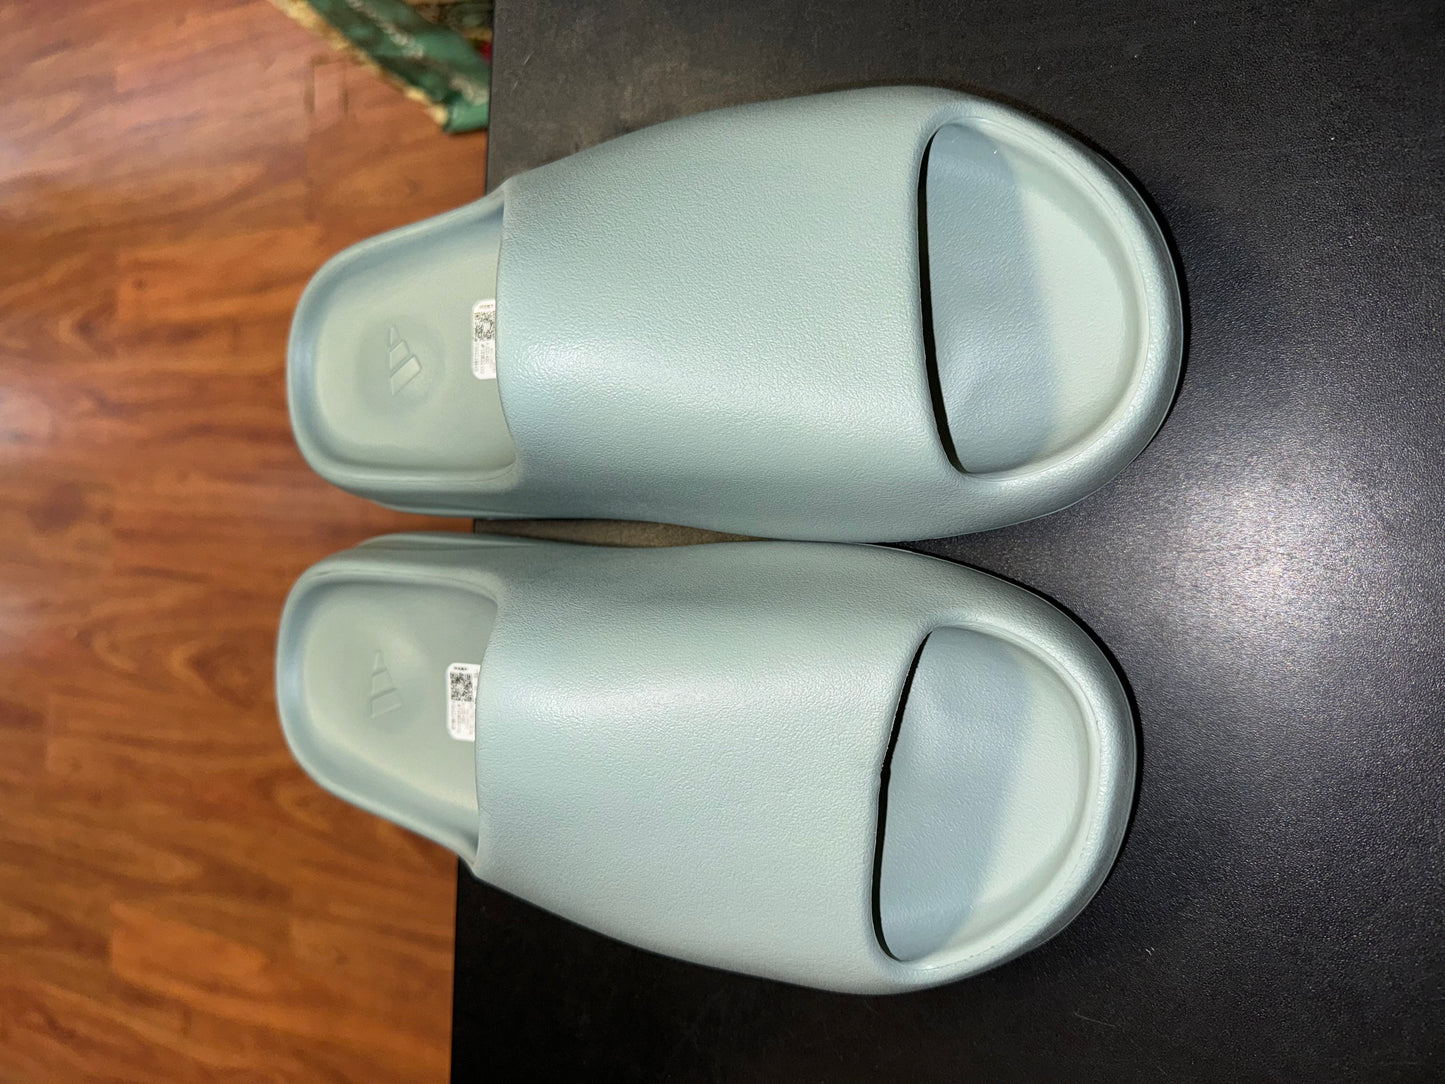 Size 13 Adidas Yeezy Slide “Salt” Brand New (MAMO)